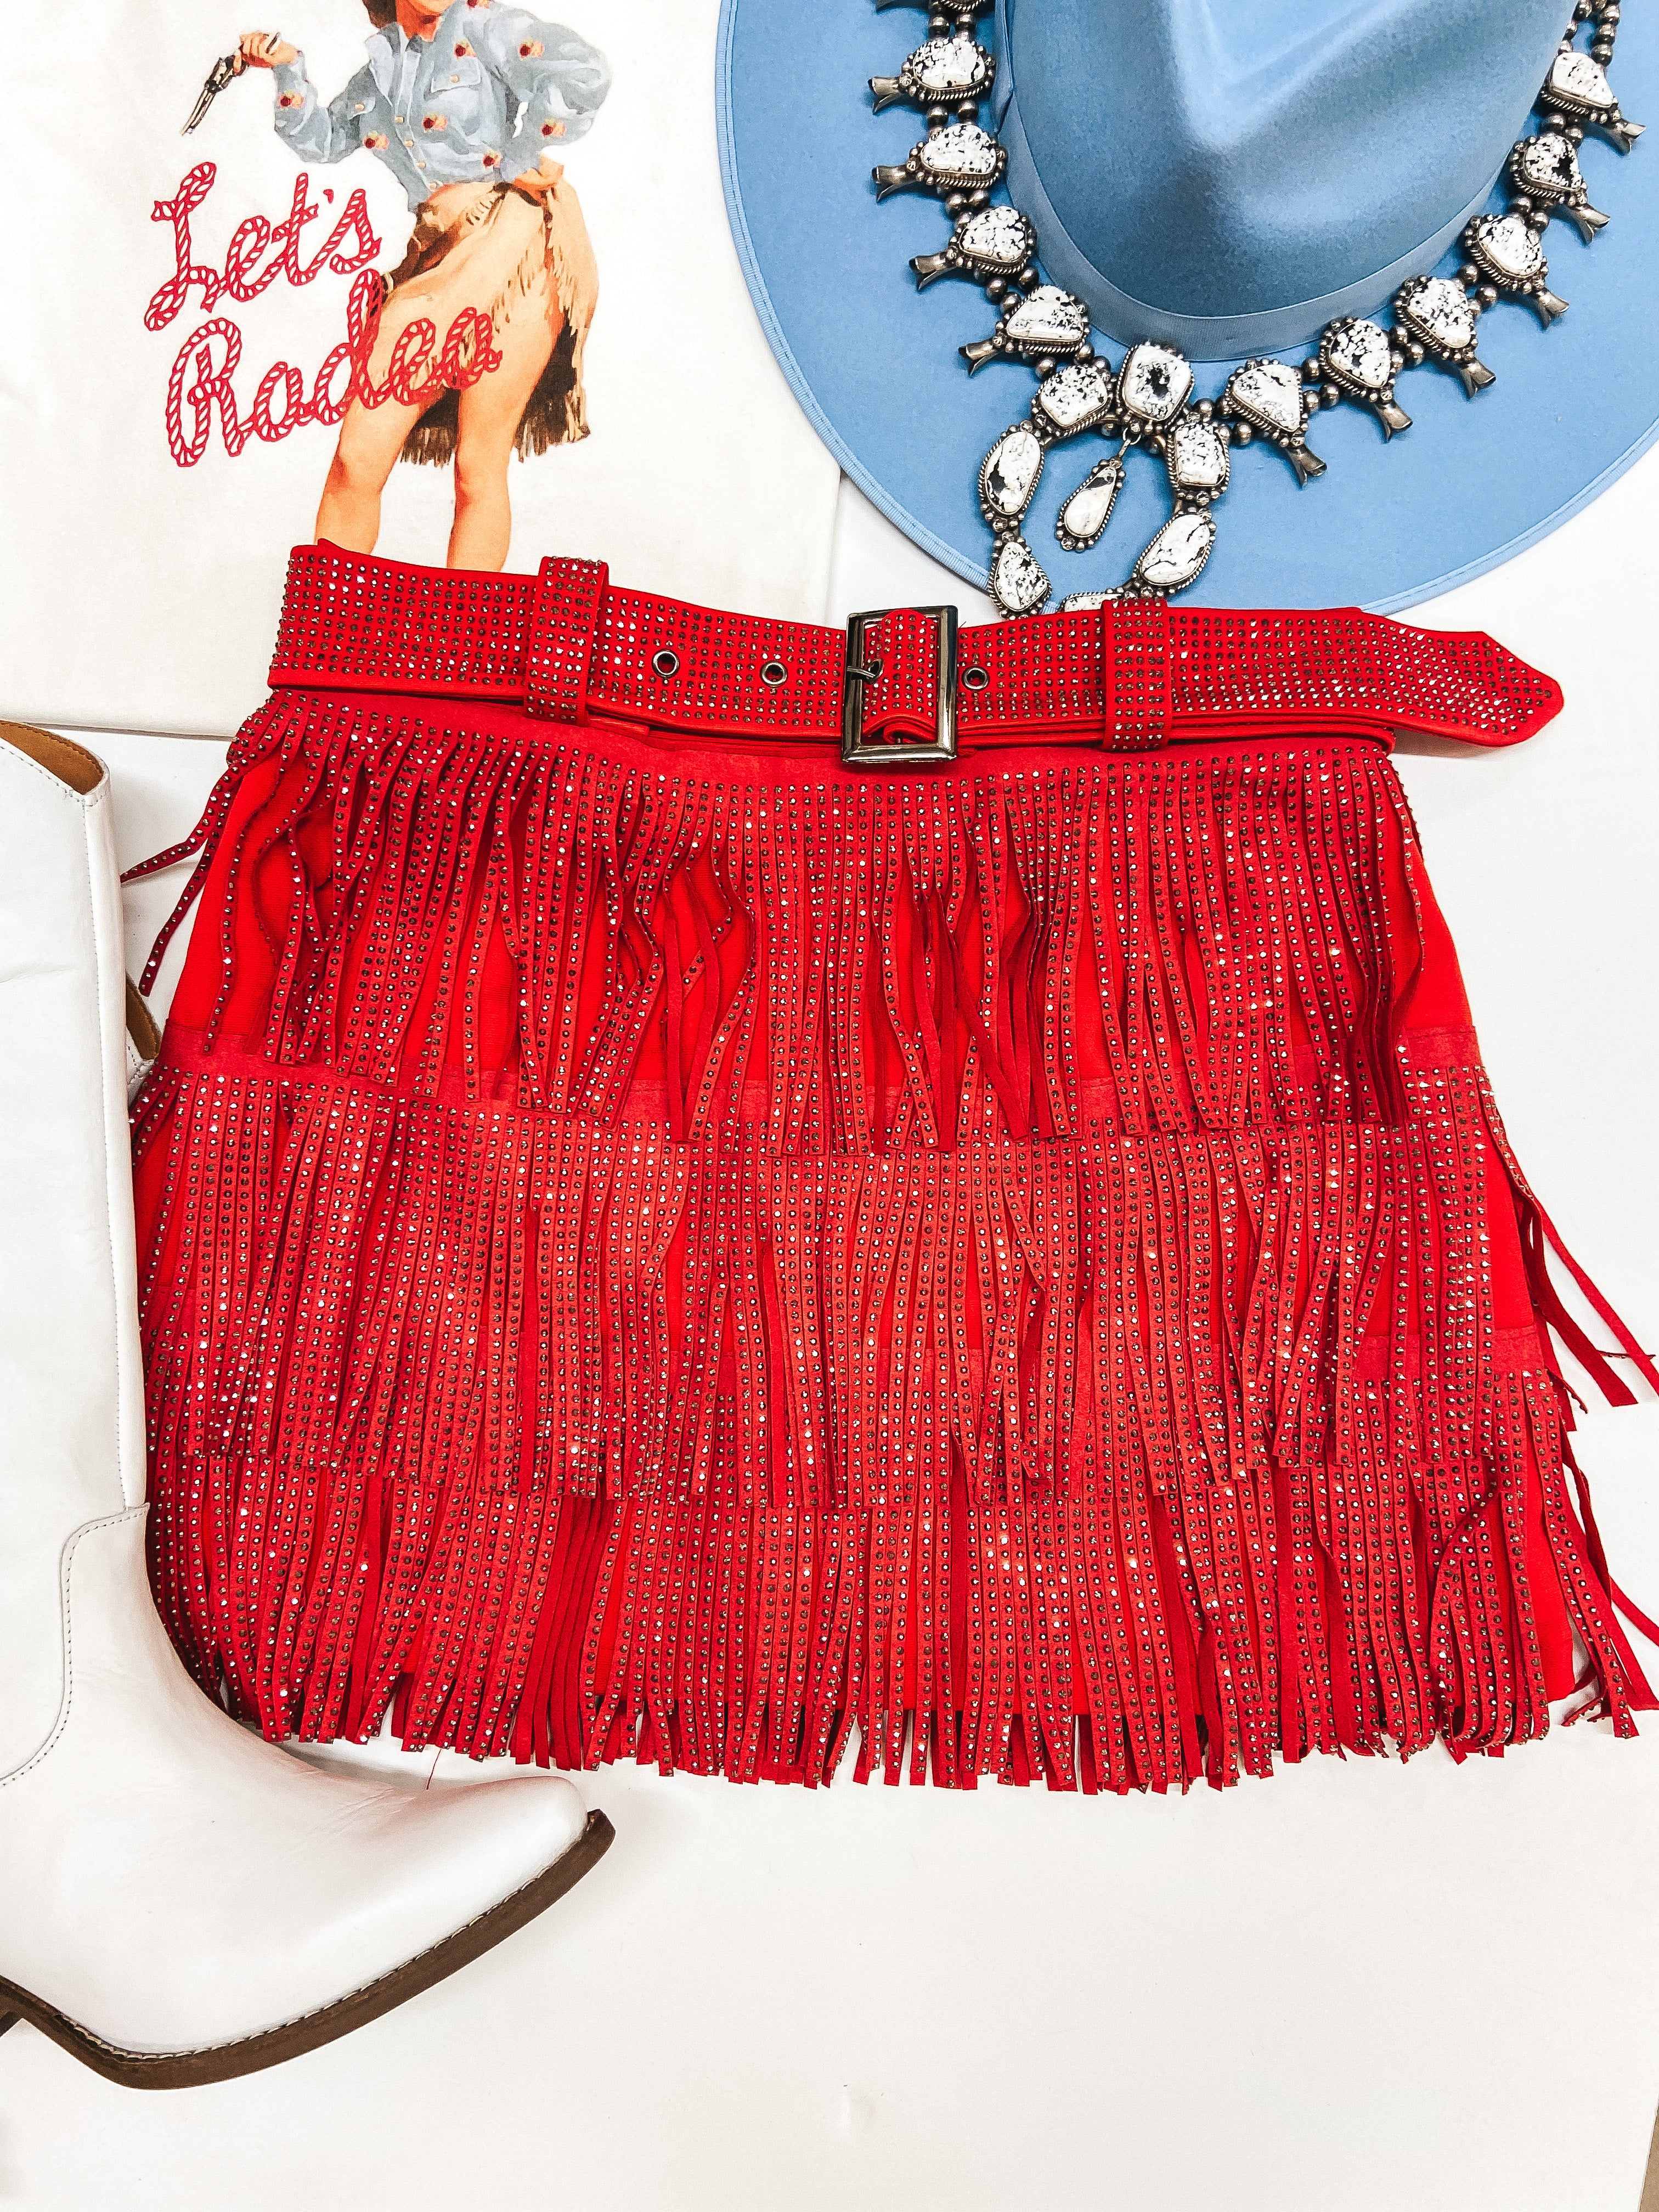 Cowboy Killer Crystal Fringe Mini Skort in Red - Giddy Up Glamour Boutique